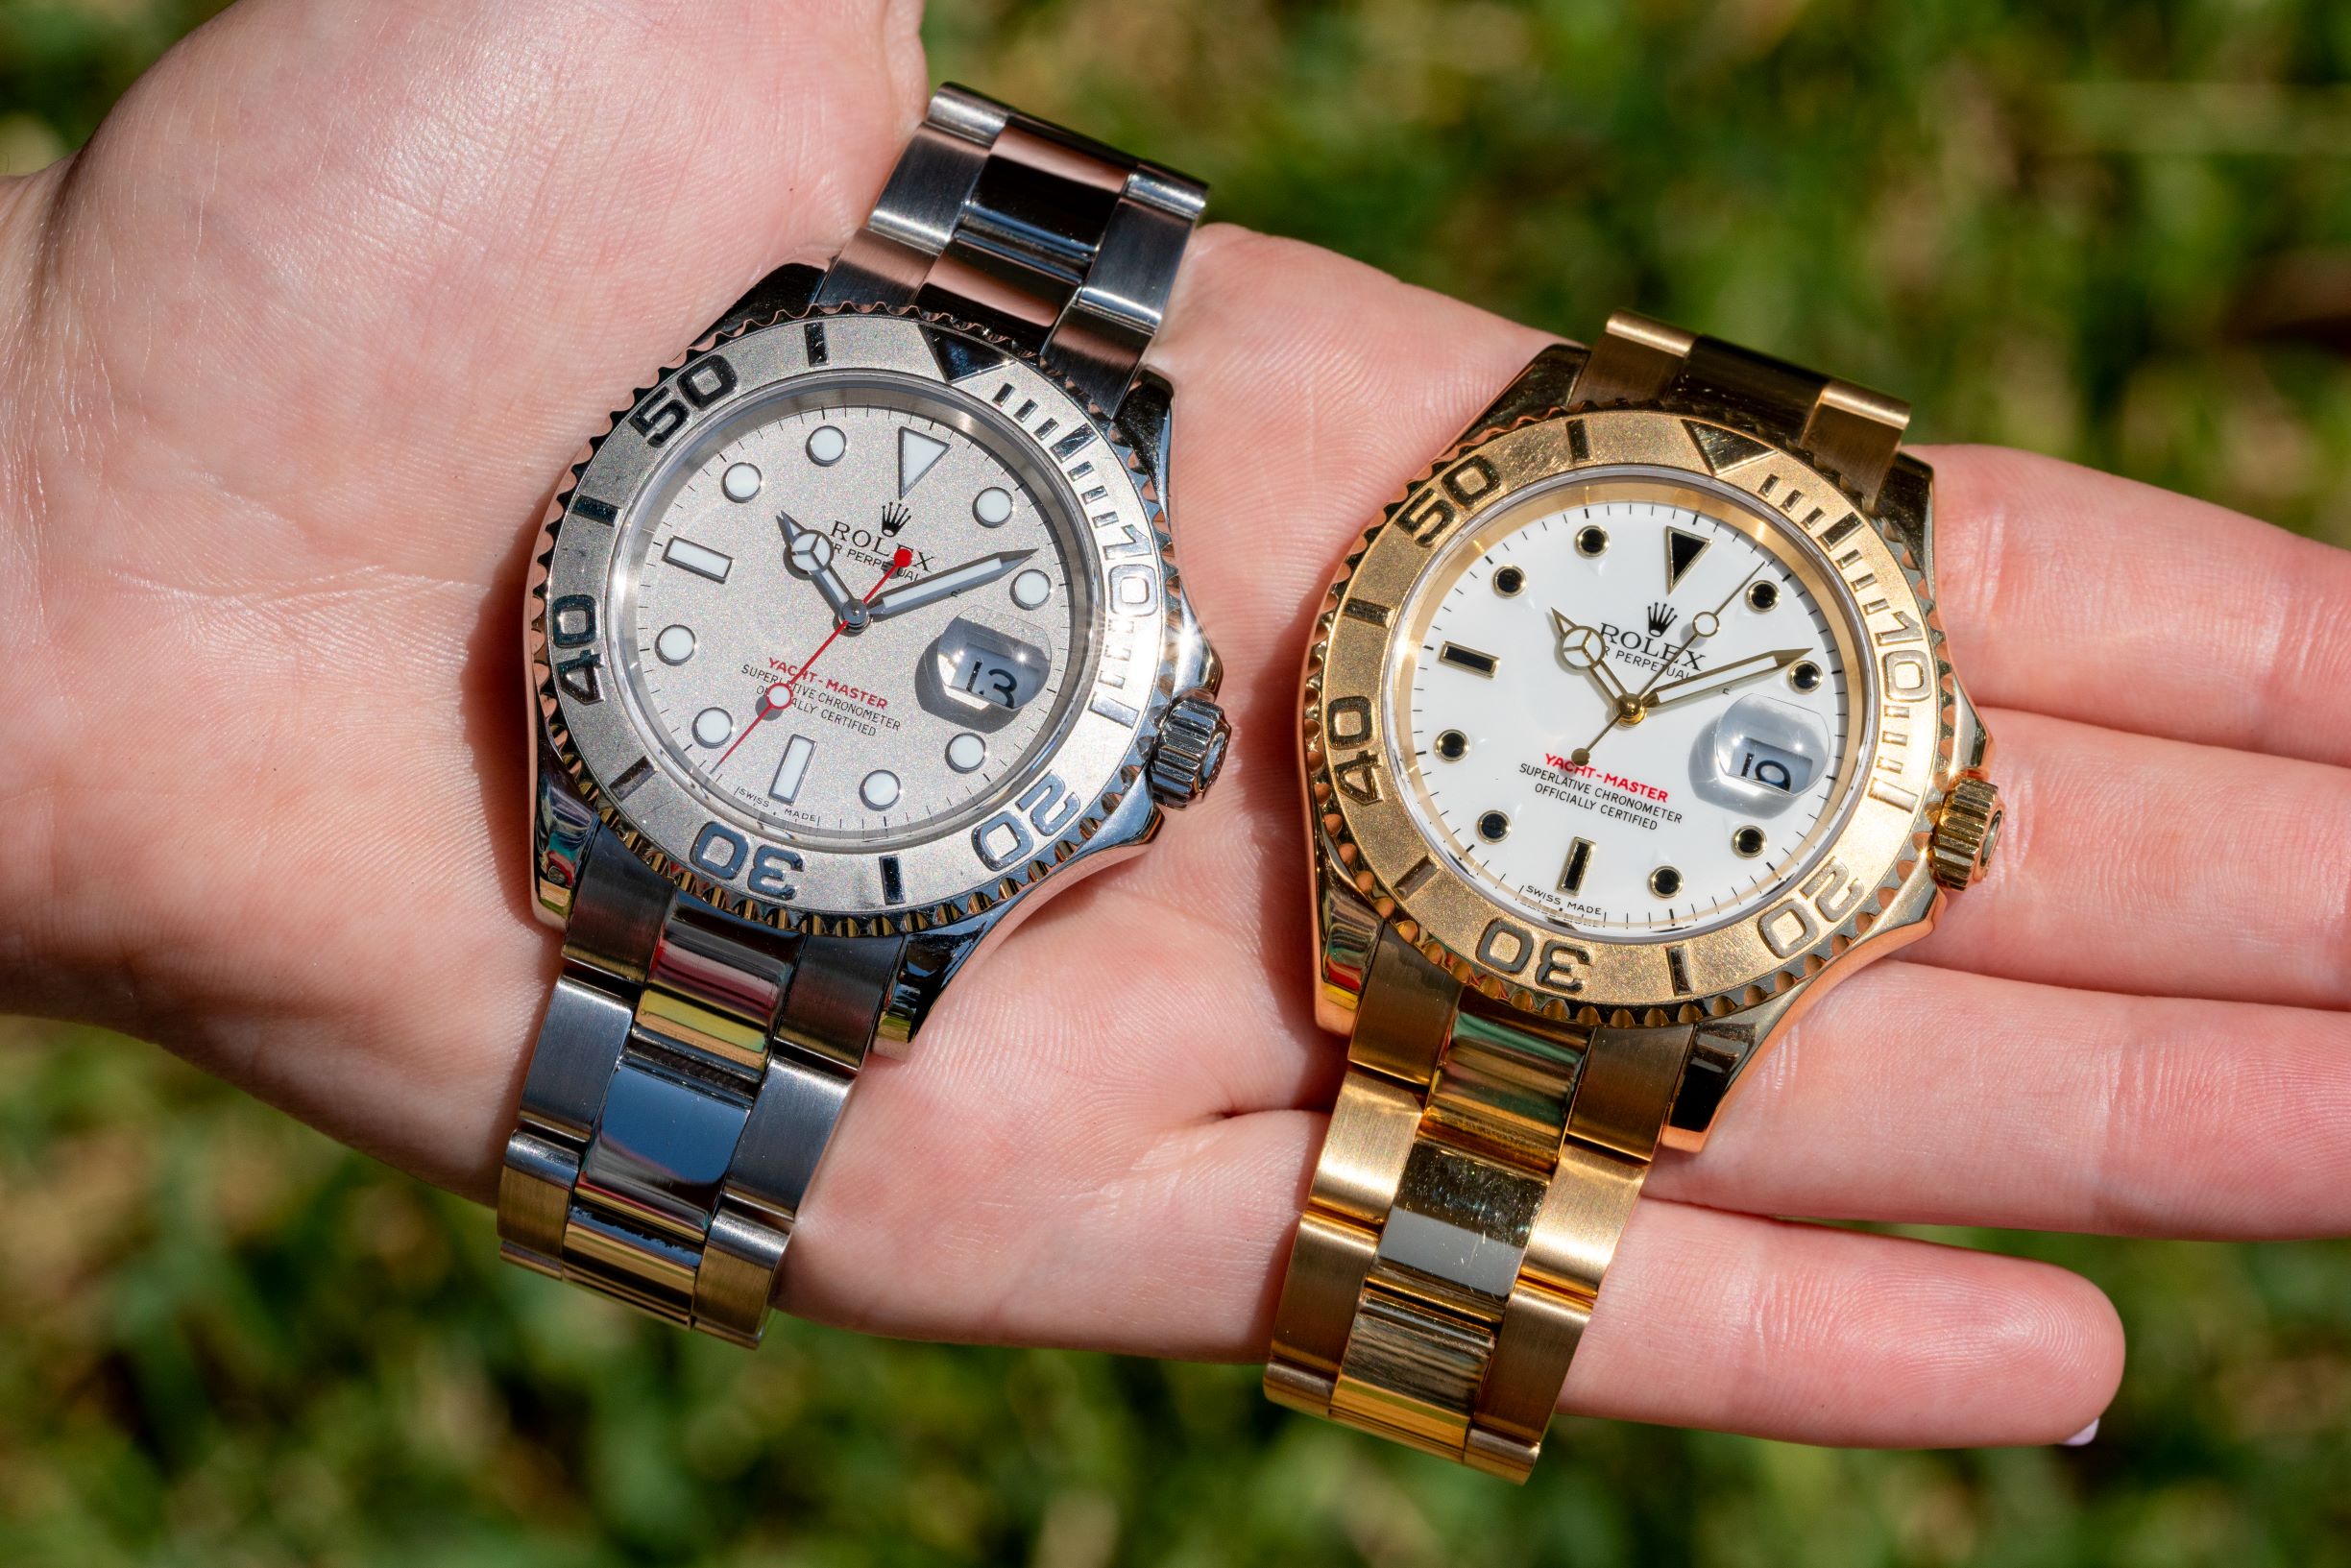 Rolex Yacht-Master wristwatches